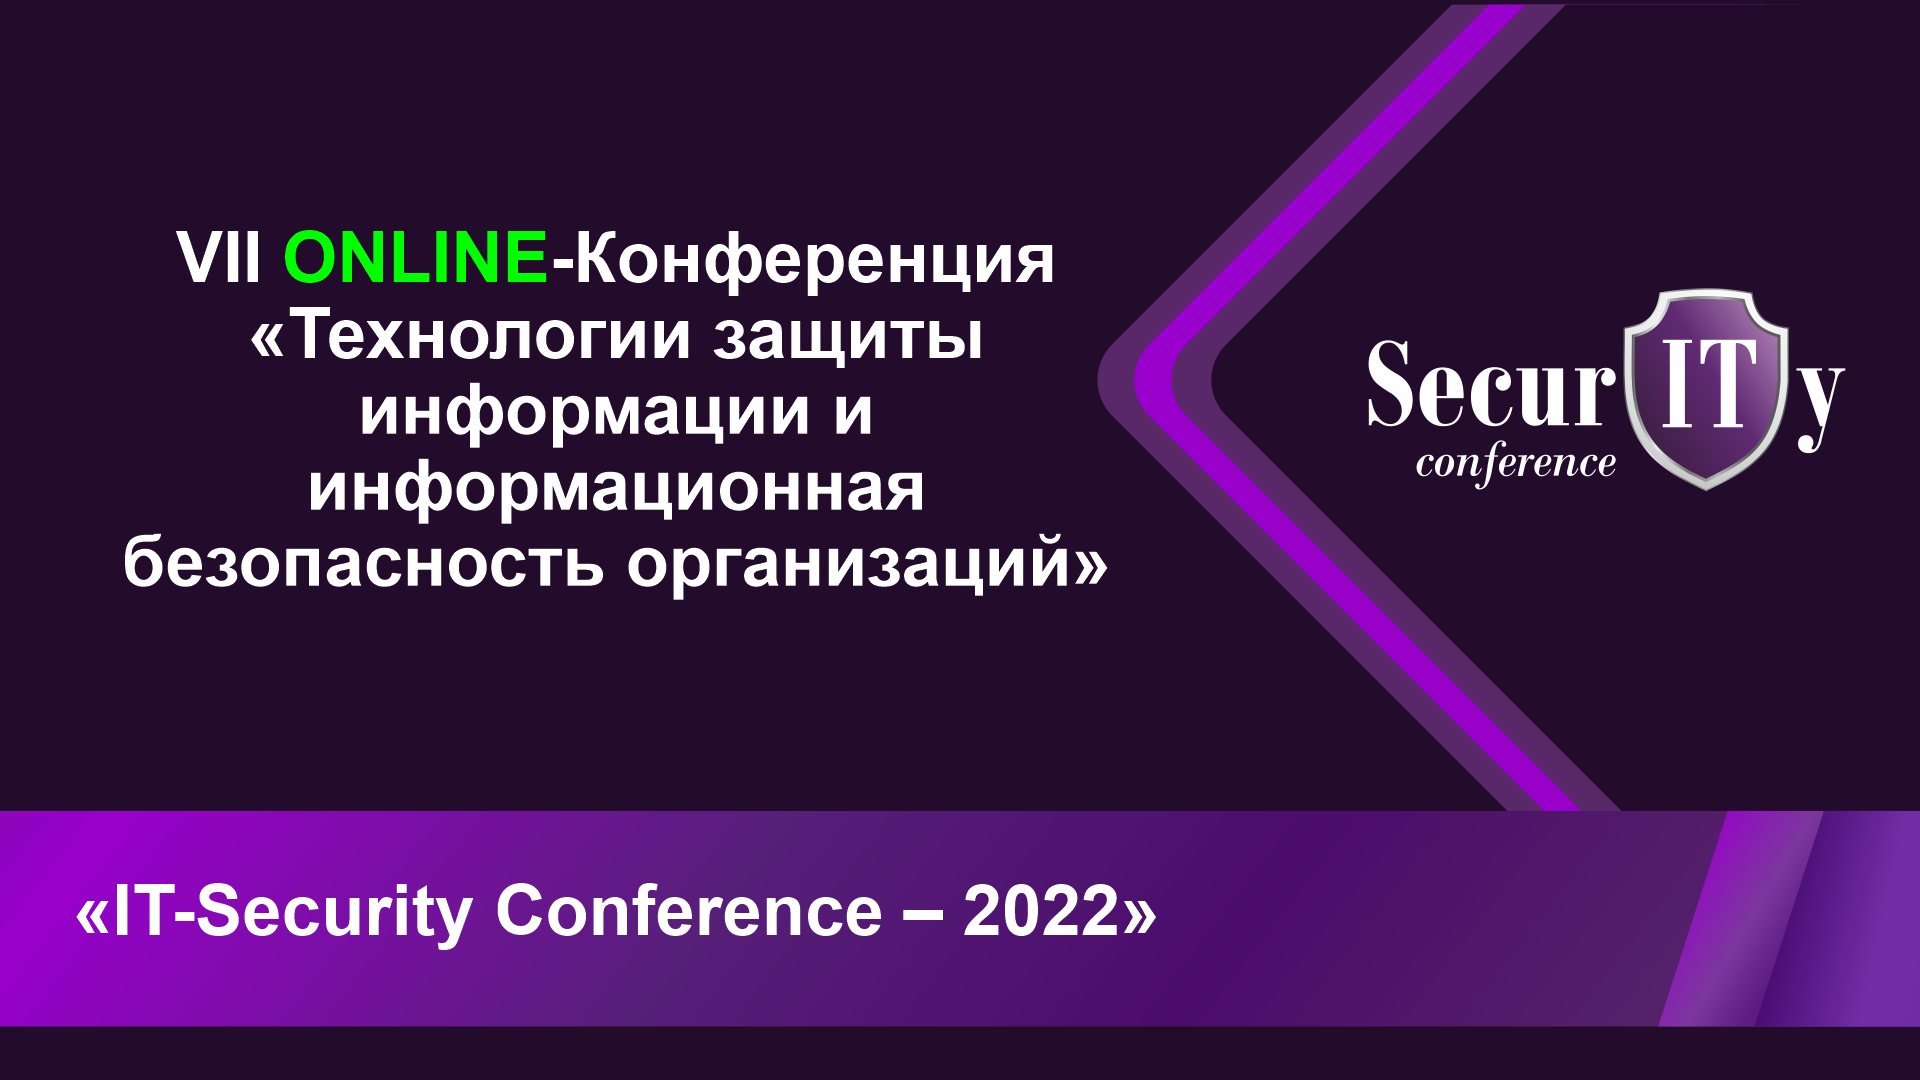 Защиту персональных данных обсудили на IT-Security Conference — 2022